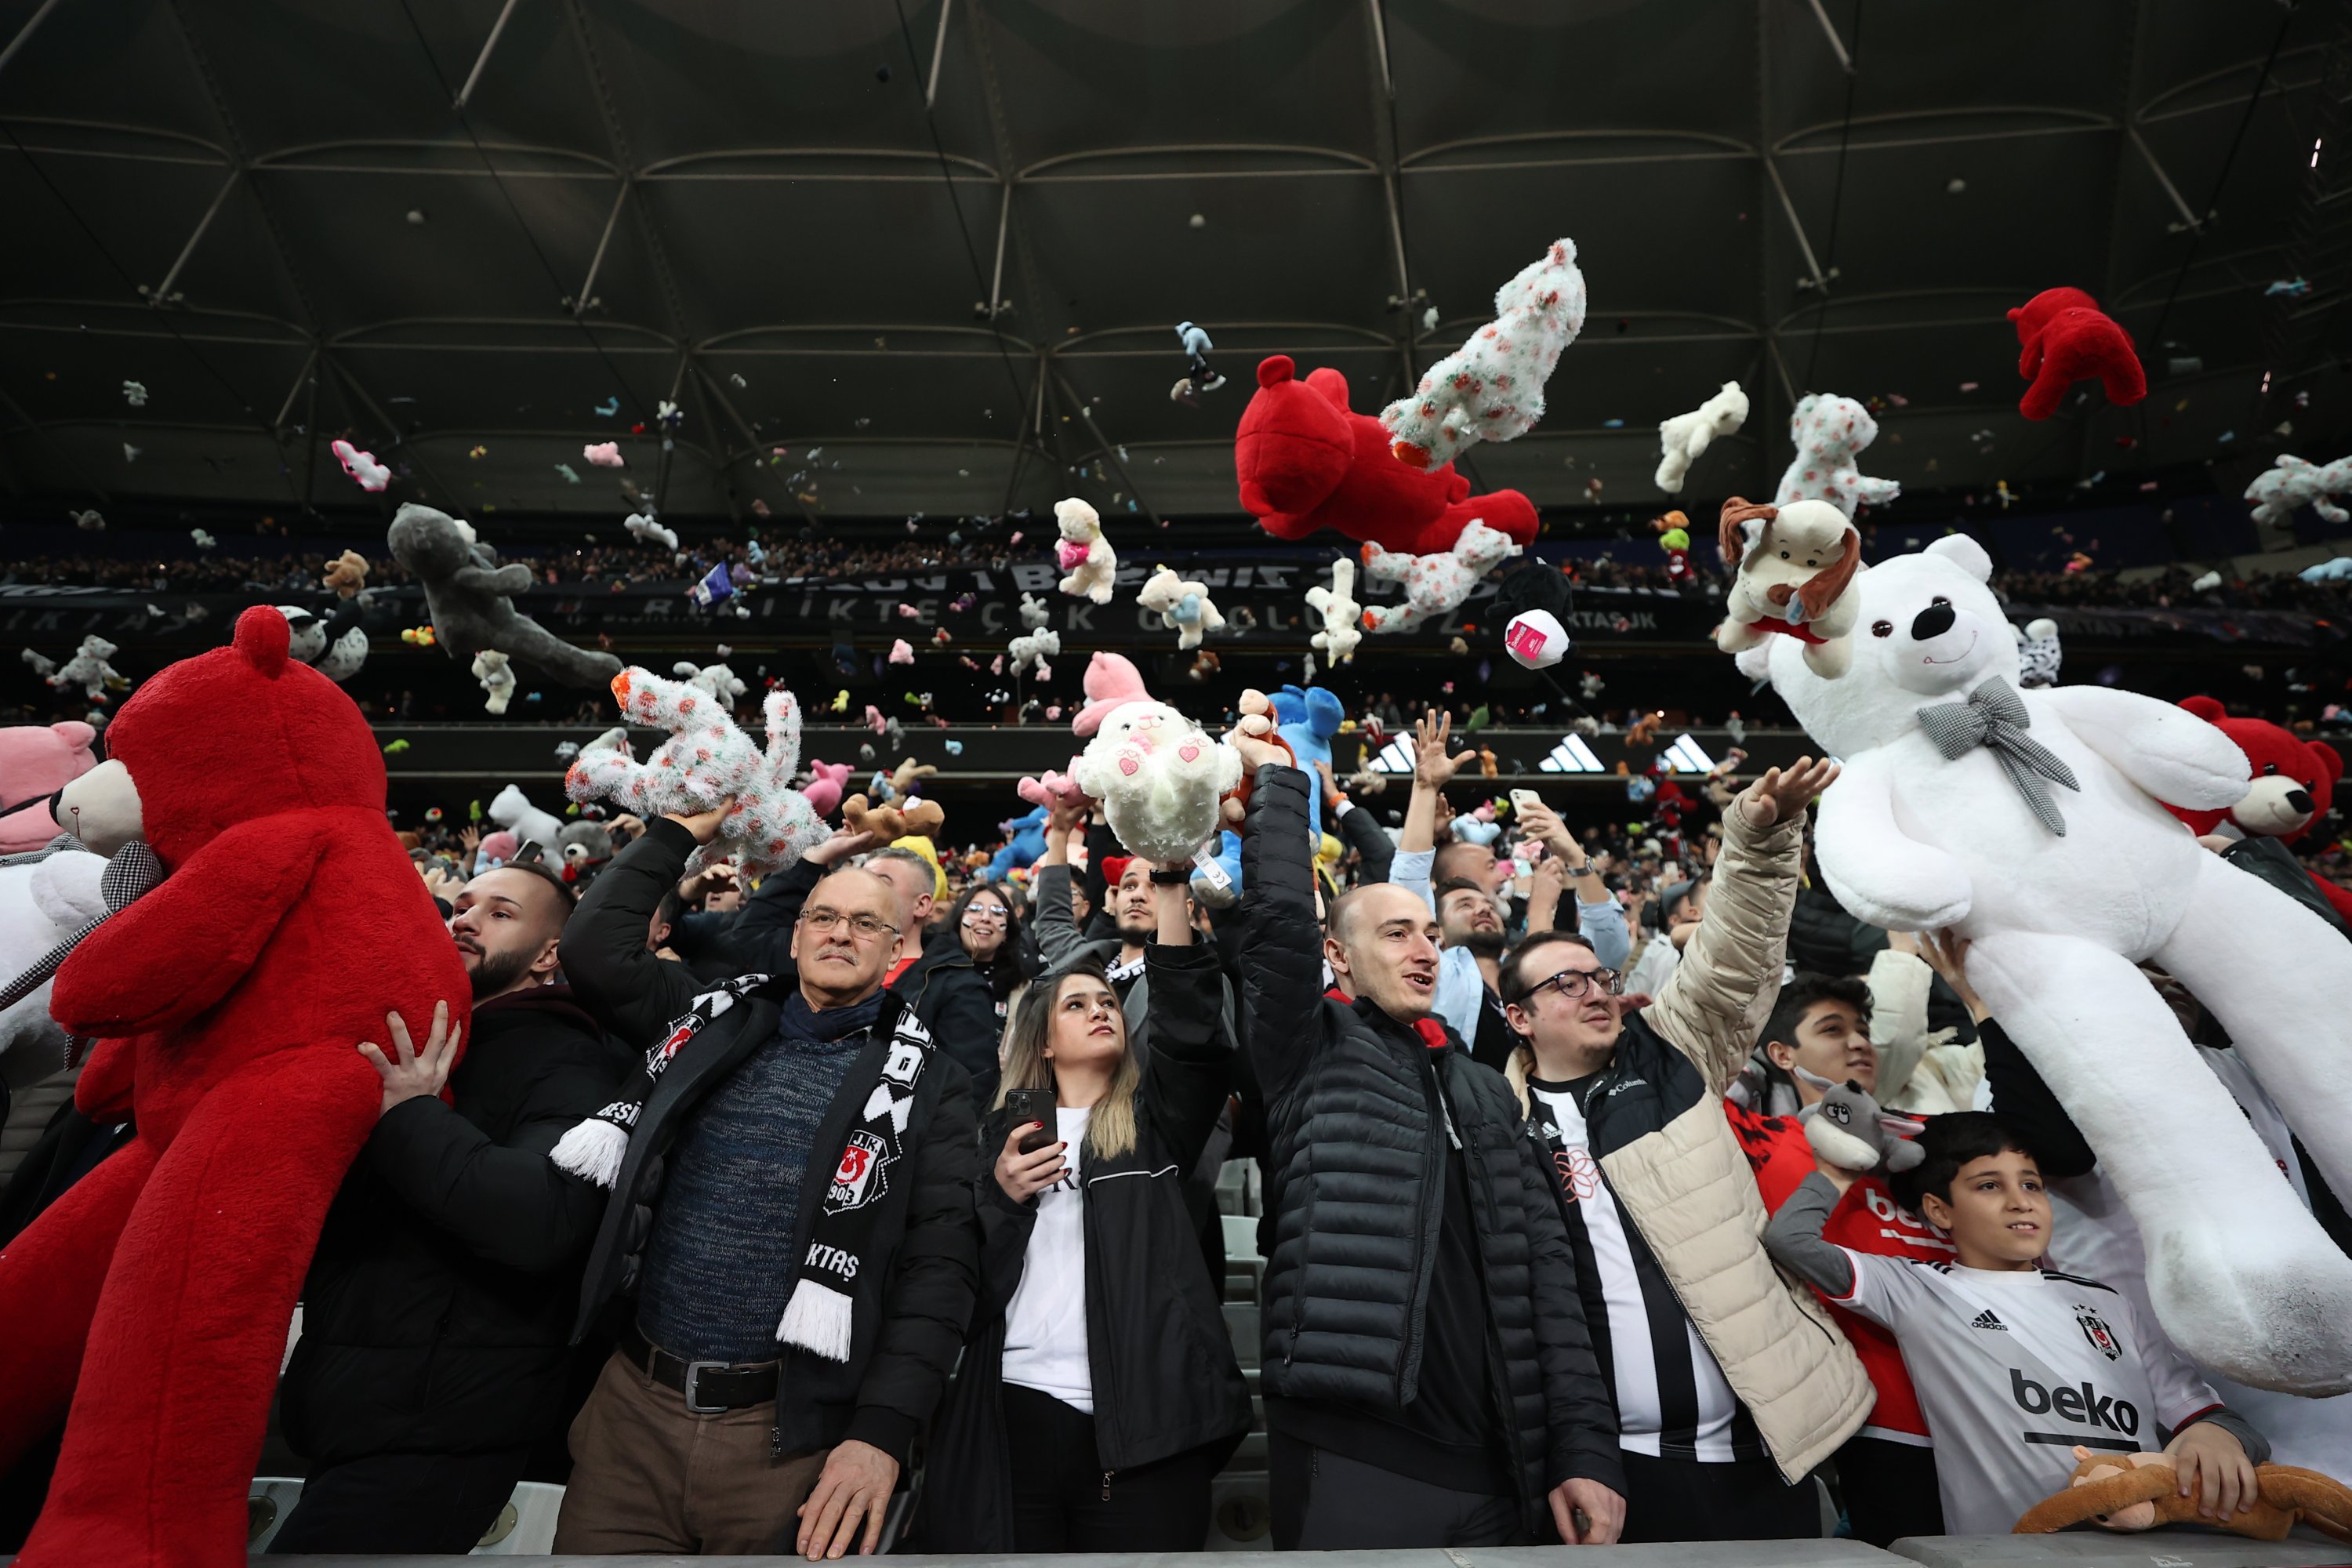 Penggemar Beşiktaş melempar mainan ke lapangan selama pertandingan sepak bola Süper Lig Turki antara Beşiktaş dan Antalyaspor di stadion Vodafone, Istanbul, Türkiye, 26 Februari 2023. (Foto AA)